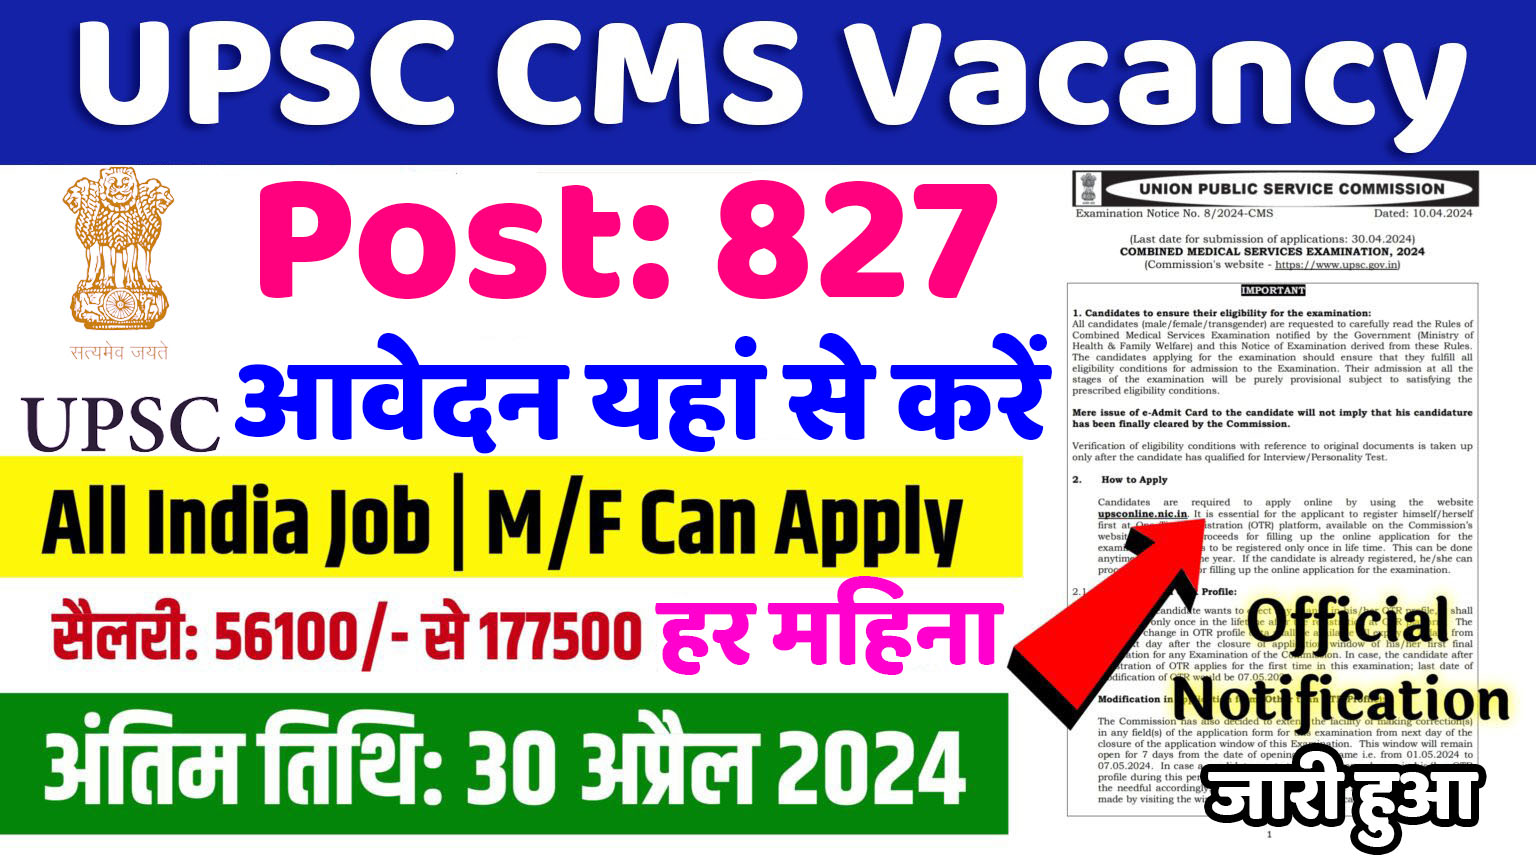 UPSC CMS Vacancy : यूपीएससी में सीएमएस के 827 पदों पर नई भर्ती का नोटिफिकेशन जारी, 30 अप्रैल आवेदन की अंतिम तिथि